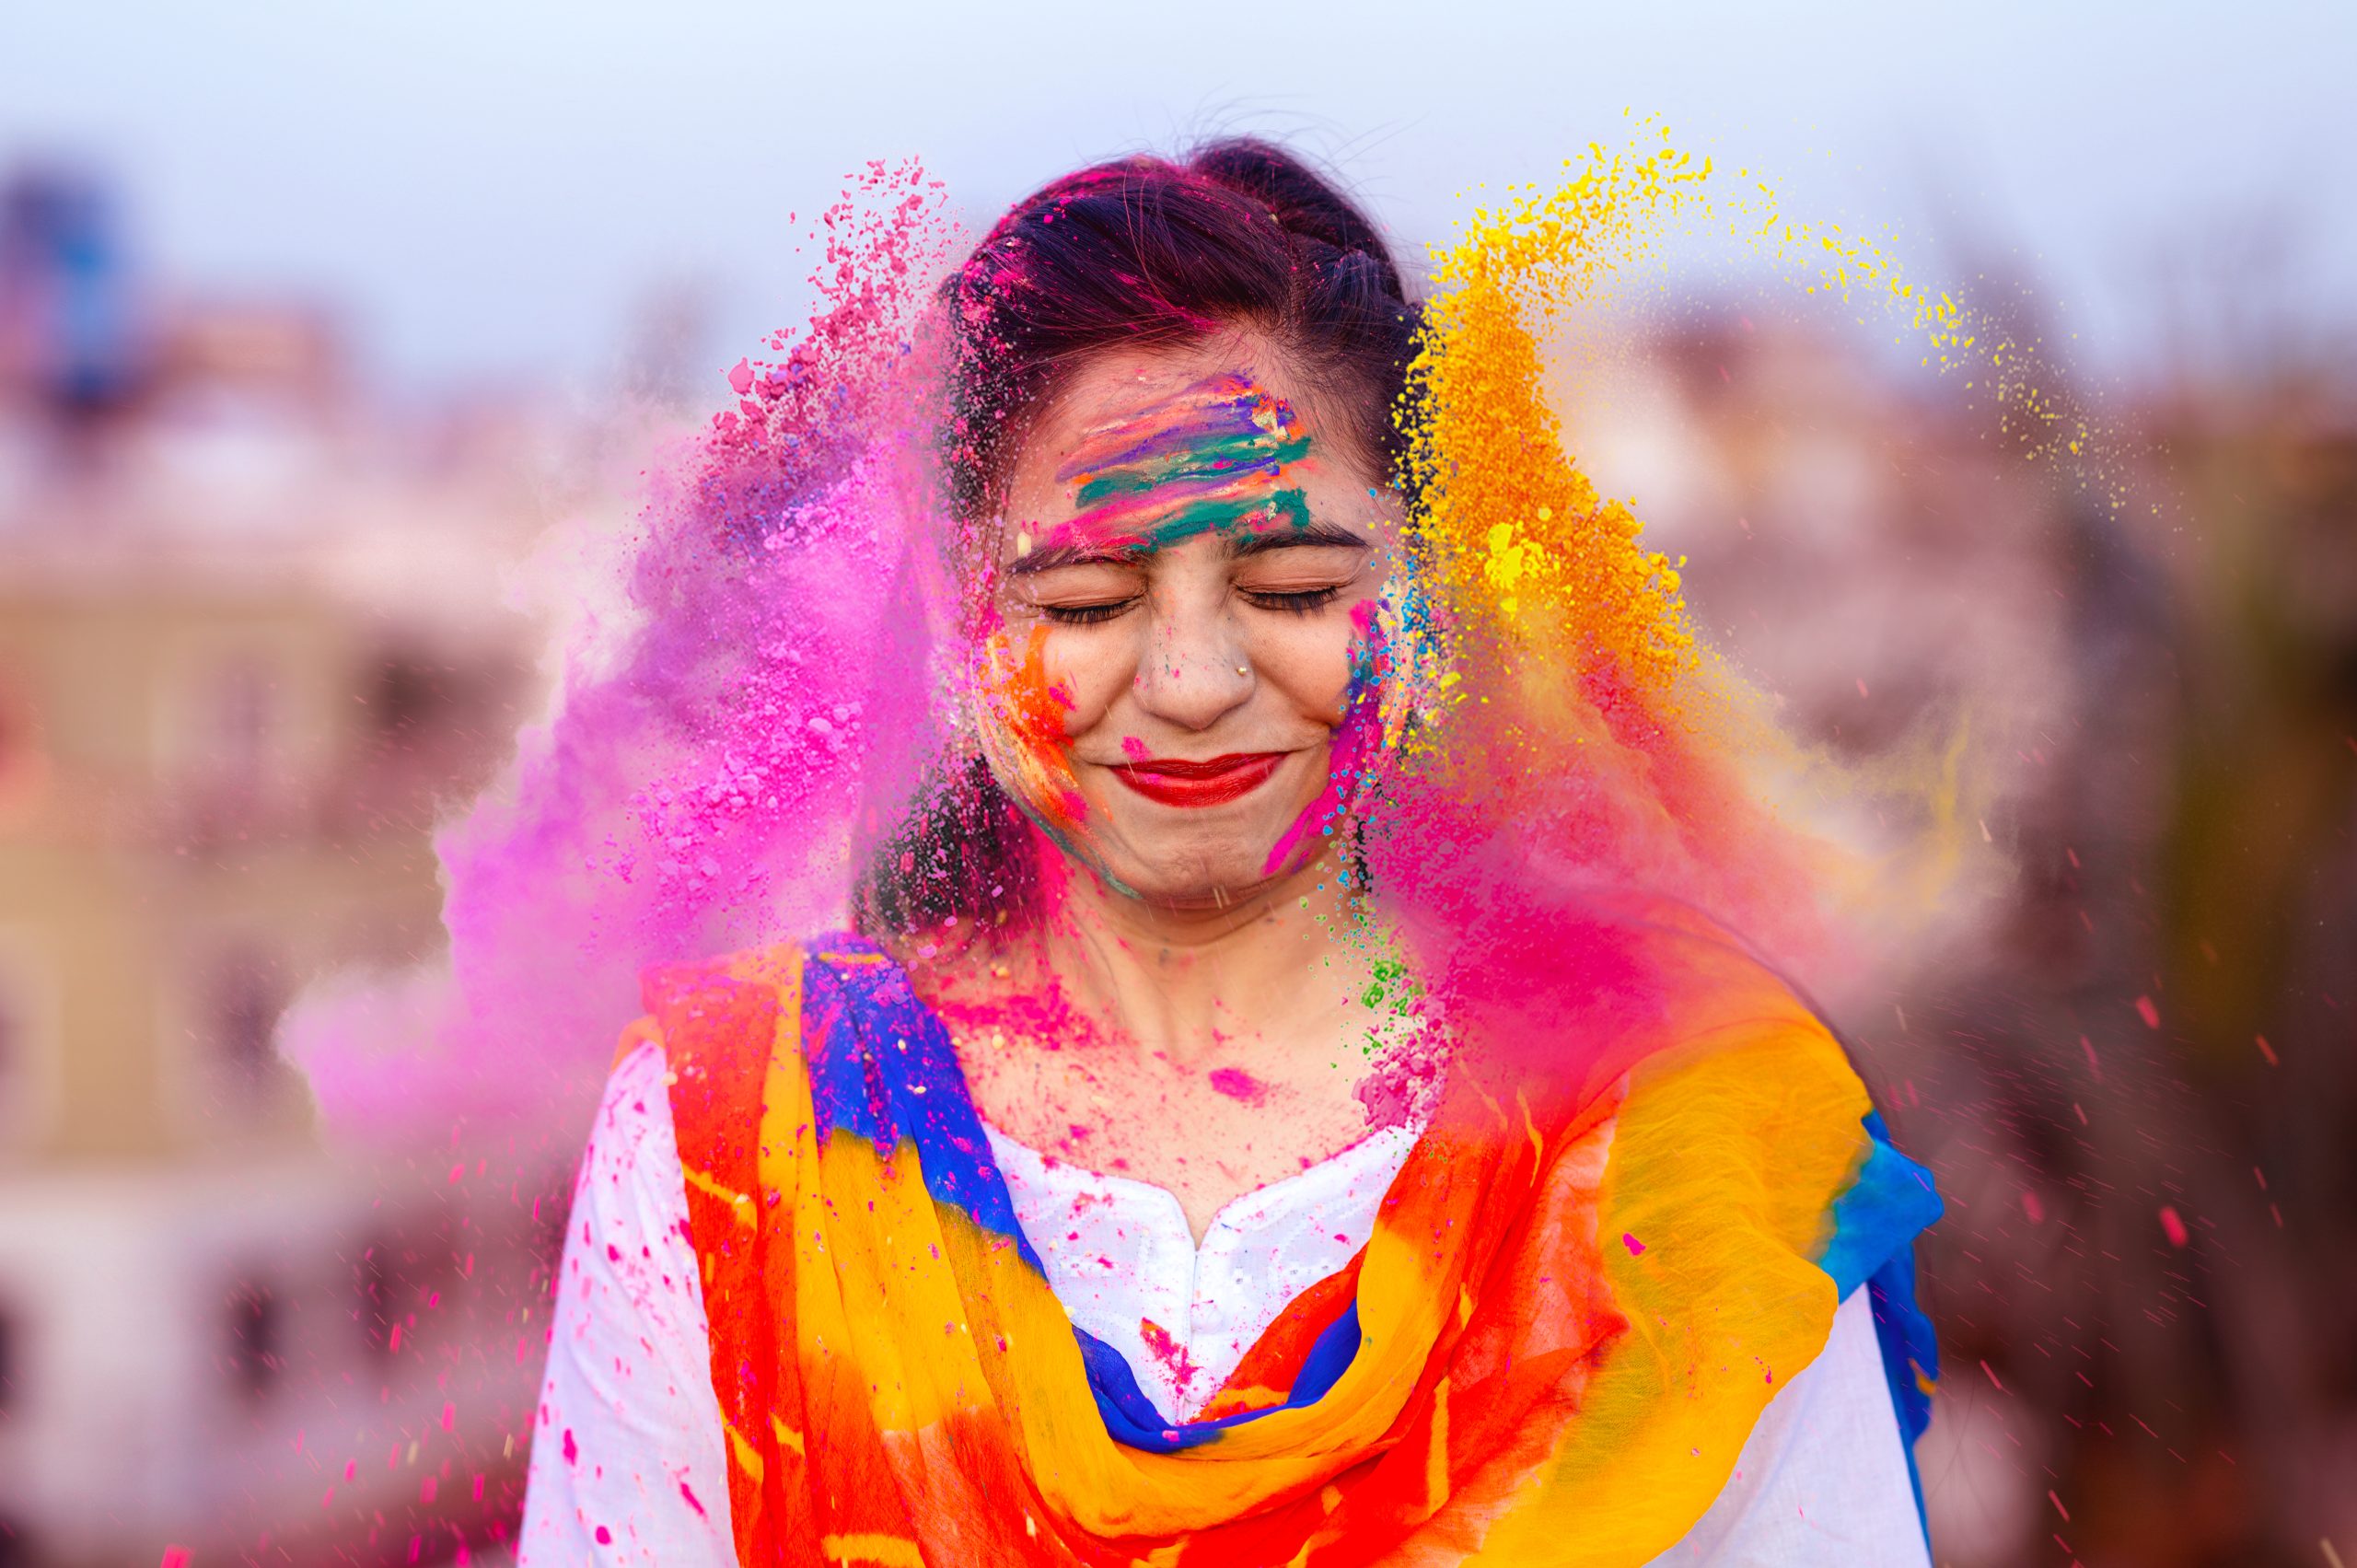 Portrait of woman celebrating Holi Indian Holiday